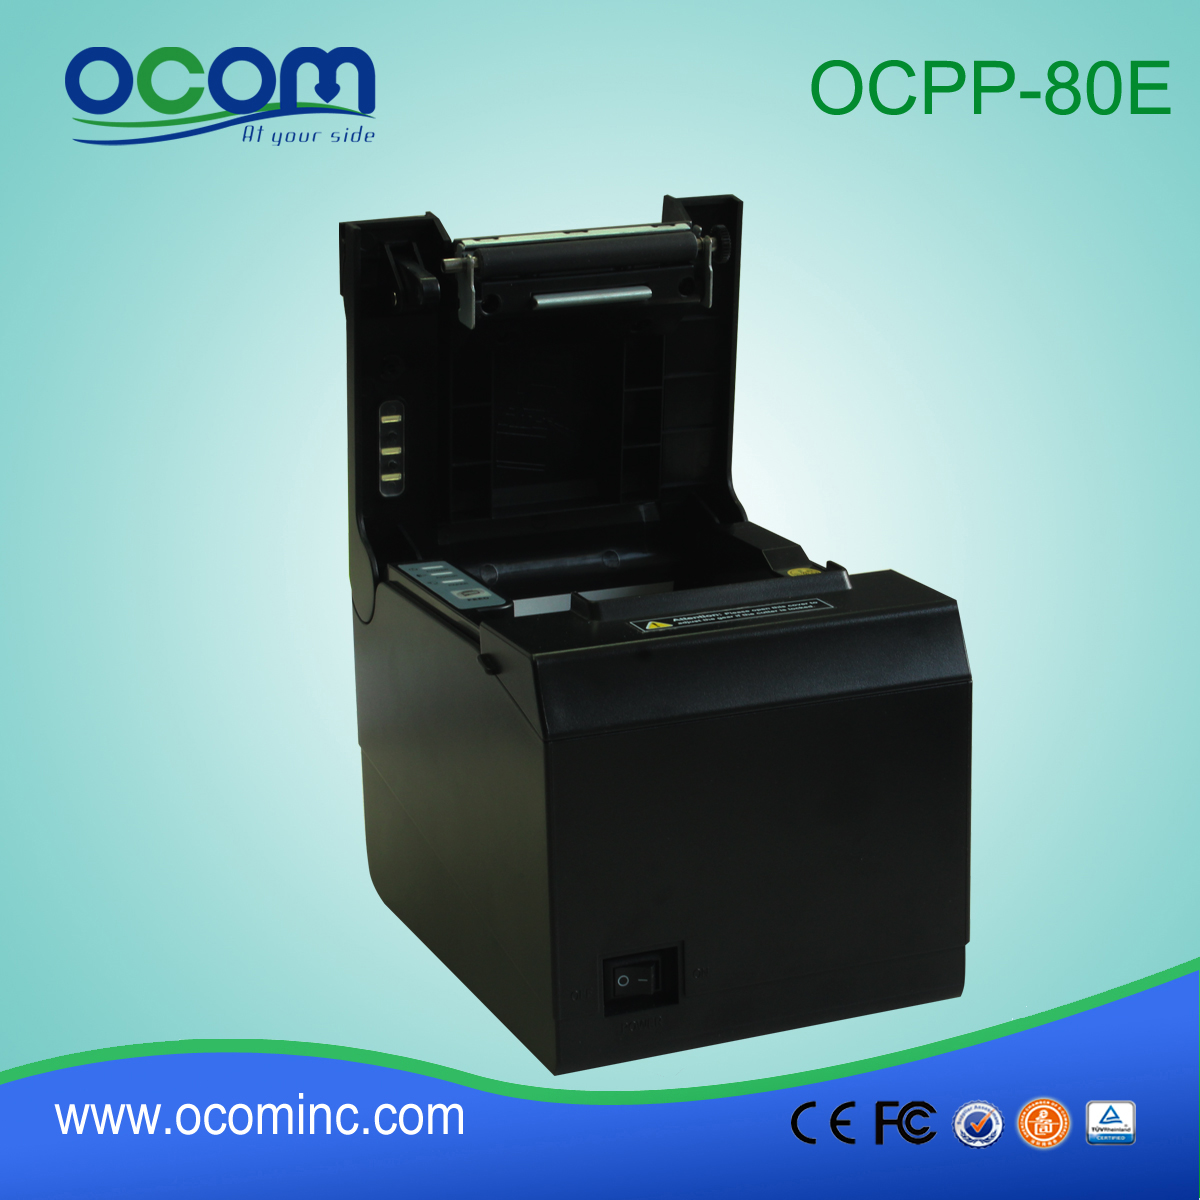 OCPP-80E USB auto di serie taglierina 80 millimetri stampante di ricevute a buon mercato pos termico